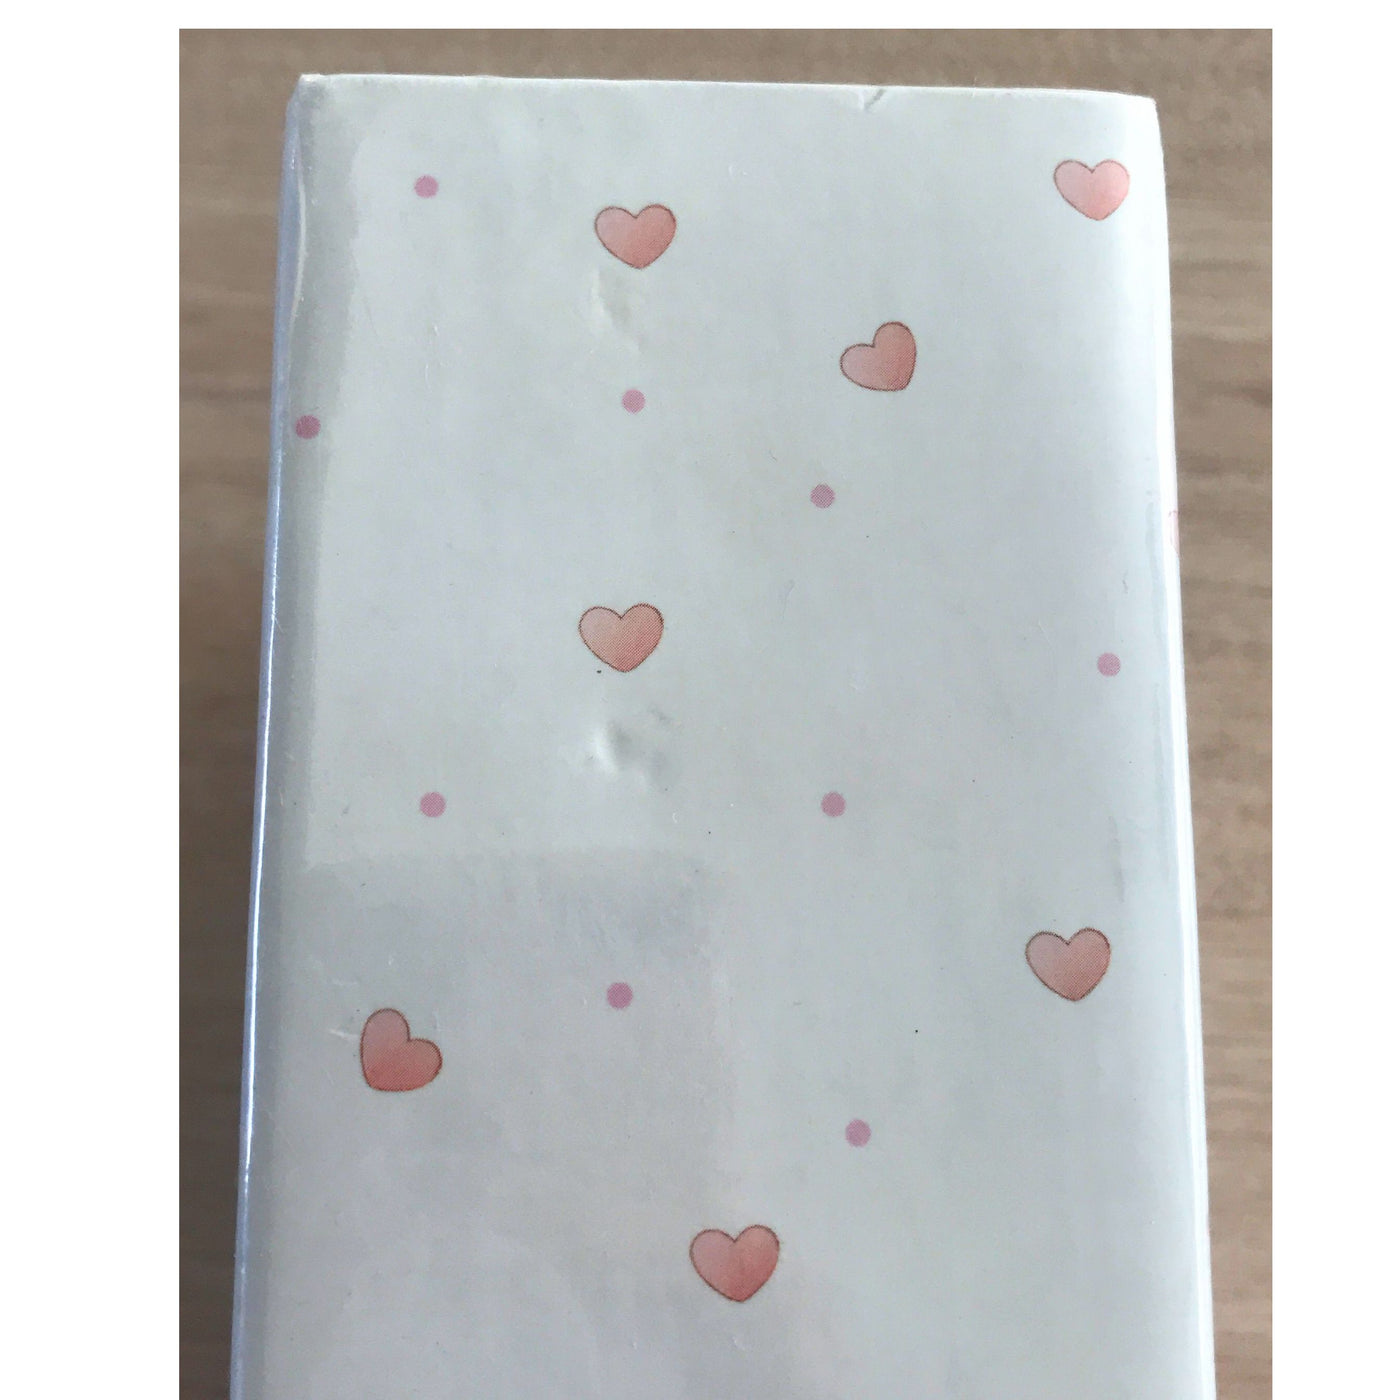 Pink Tissue Paper, 8 sheets - Tissue - Hallmark